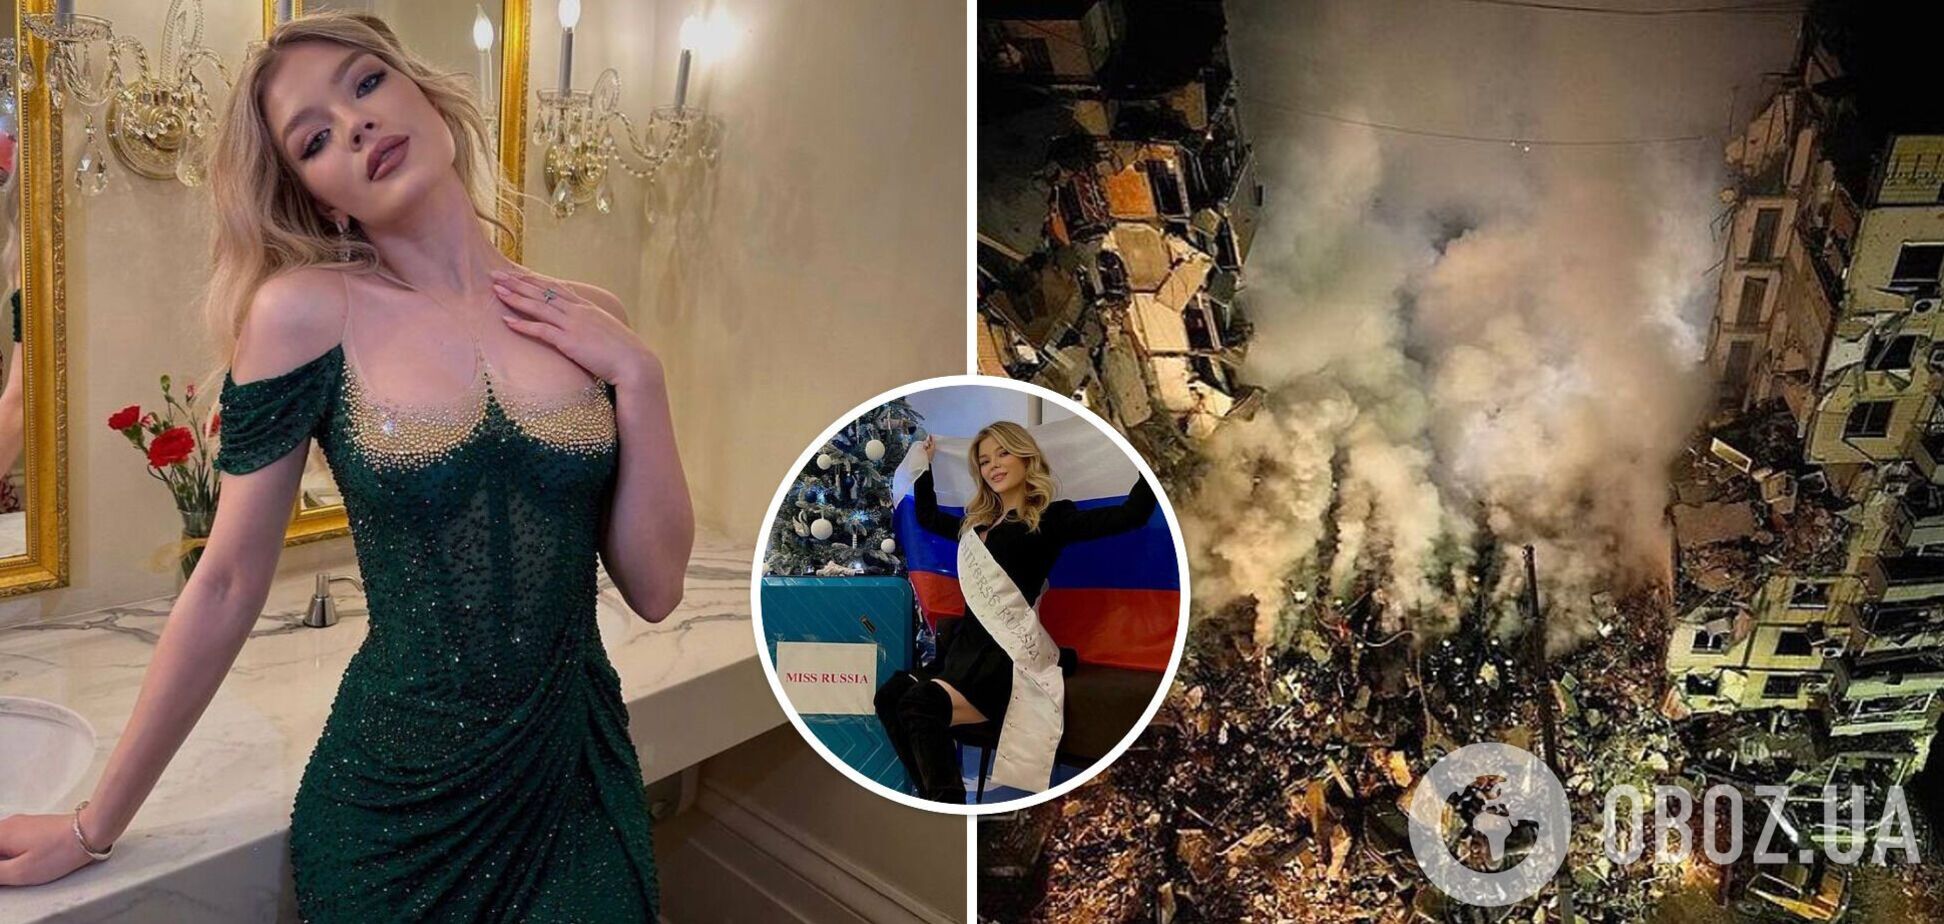 'Має бути соромно булити 22-річну': росіянка Ліннікова поскаржилася на хейт у мережі за участь у 'Міс Всесвіт'